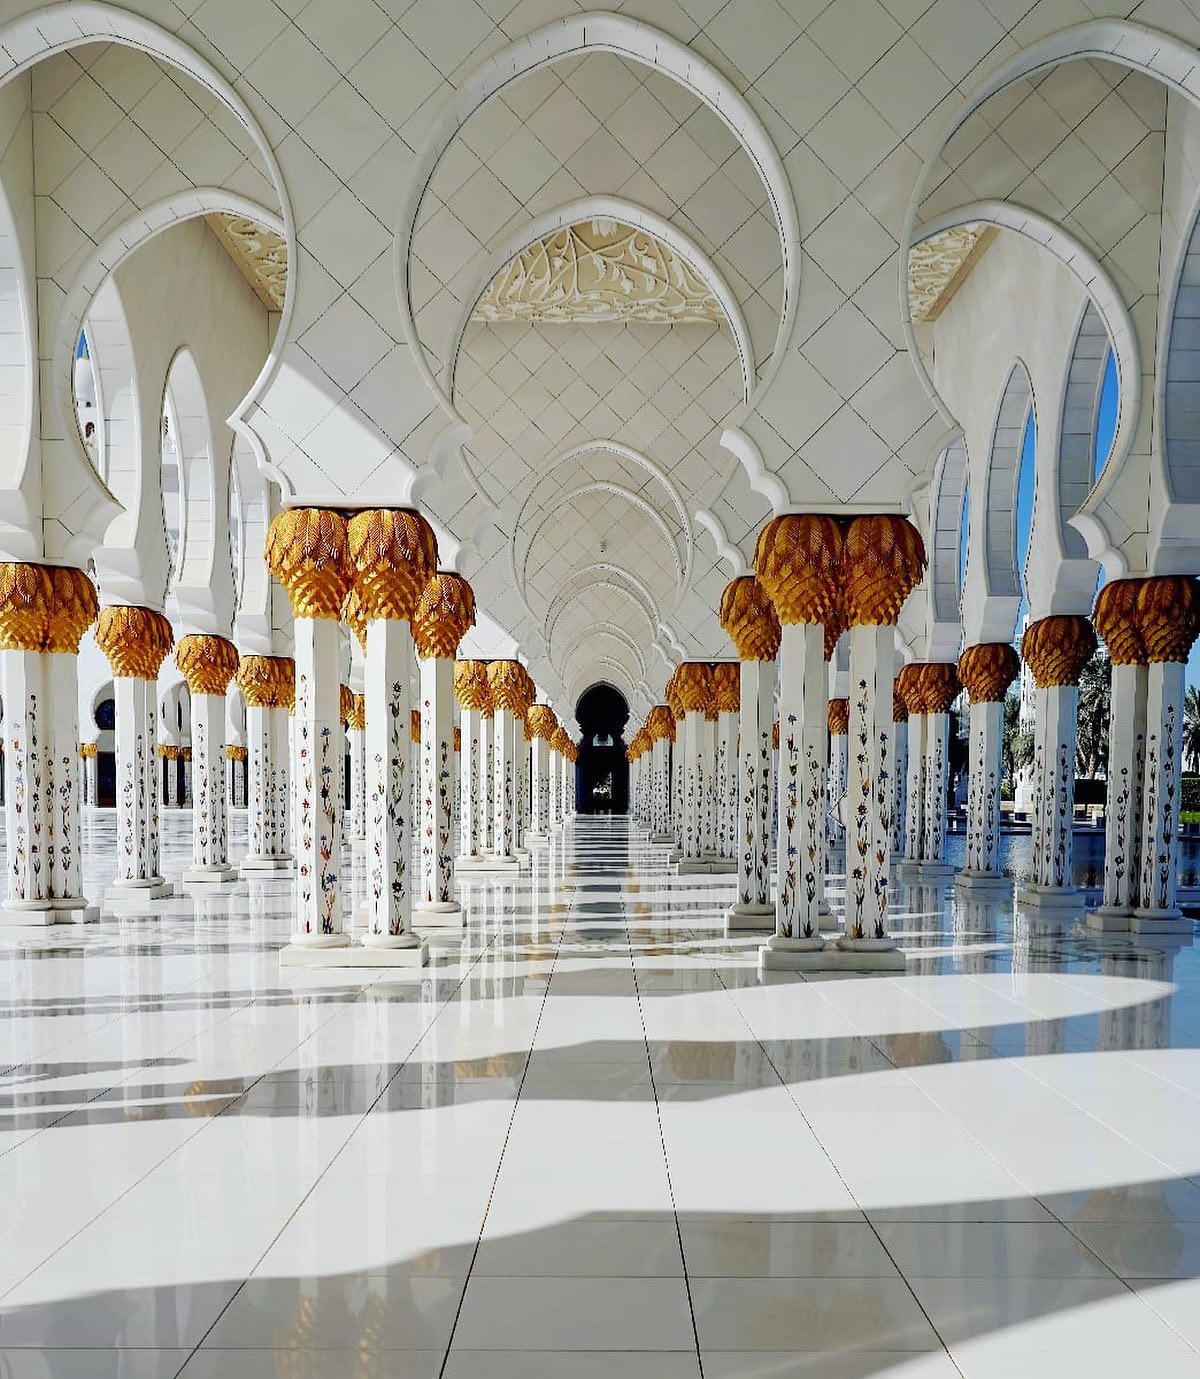 🇦🇪 【阿布達比Abu Dhabi 】世界最美的清真寺
🕌️ Sheikh Zayed 『謝赫扎耶德』大清真寺，是阿聯皇室用無上限財力打造。整座清真寺線條優雅俐落，潔白精緻，完美裝飾回教圖騰藝術
👳‍♀️來自全球頂尖的建材與工藝，花費超過55億美金，46頓黃金，高達三千多位工人參與興建

#uae #阿拉伯聯合大公國 #阿布達比 #阿布達比大清真寺 #謝赫扎耶德清真寺 #travelwithmikeanna #把世界當教室🌍